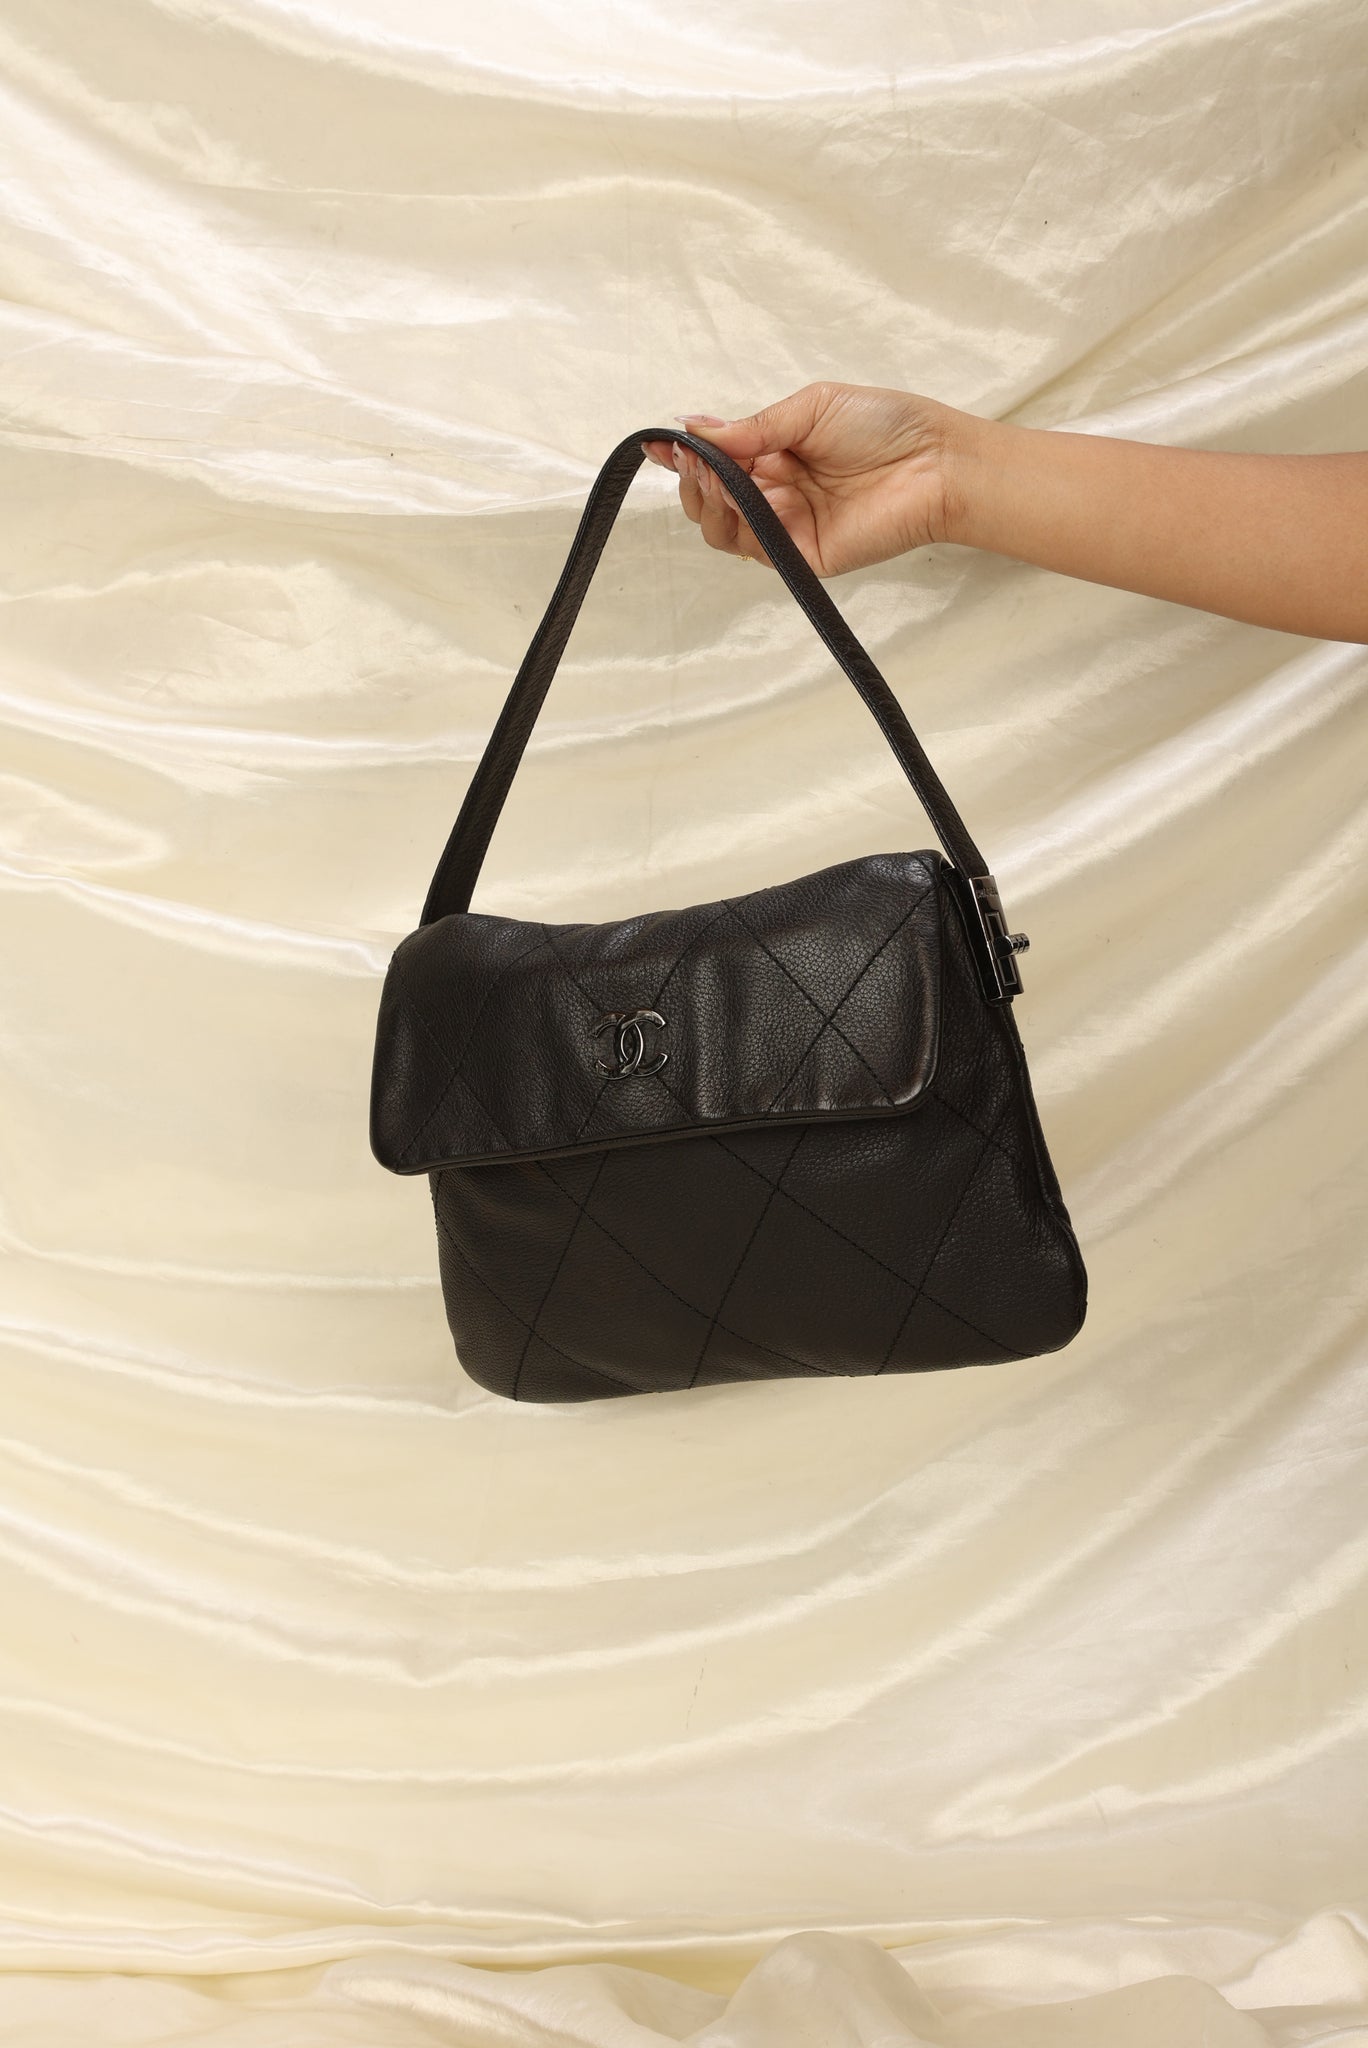 Chanel Calfskin Flap Bag